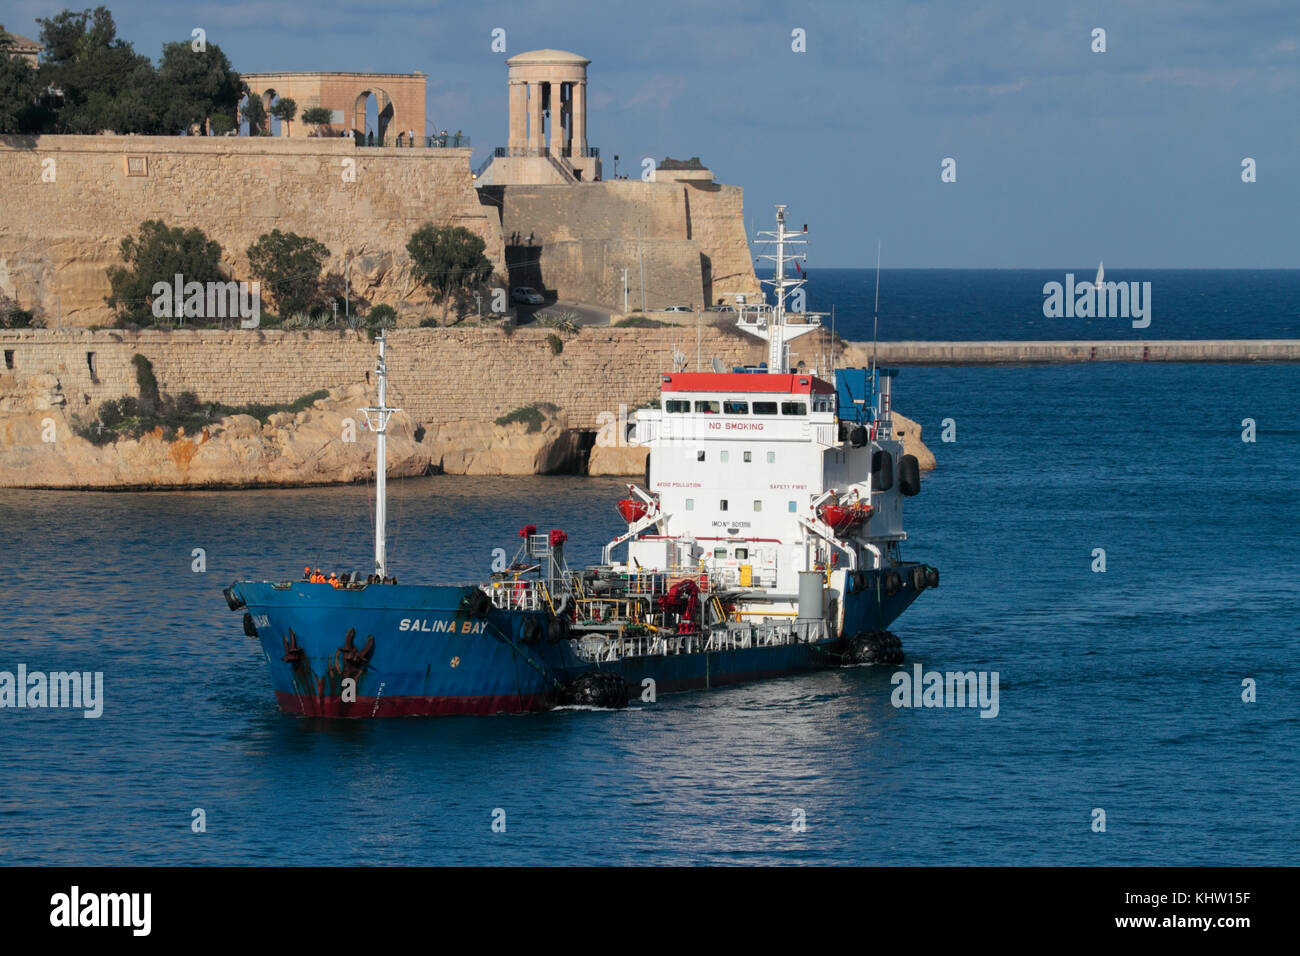 El buque bunkering Salina Bay entrando en el puerto de Malta. Bunkering Offshore (reabastecimiento de buques) es una actividad económica importante en Malta. Foto de stock